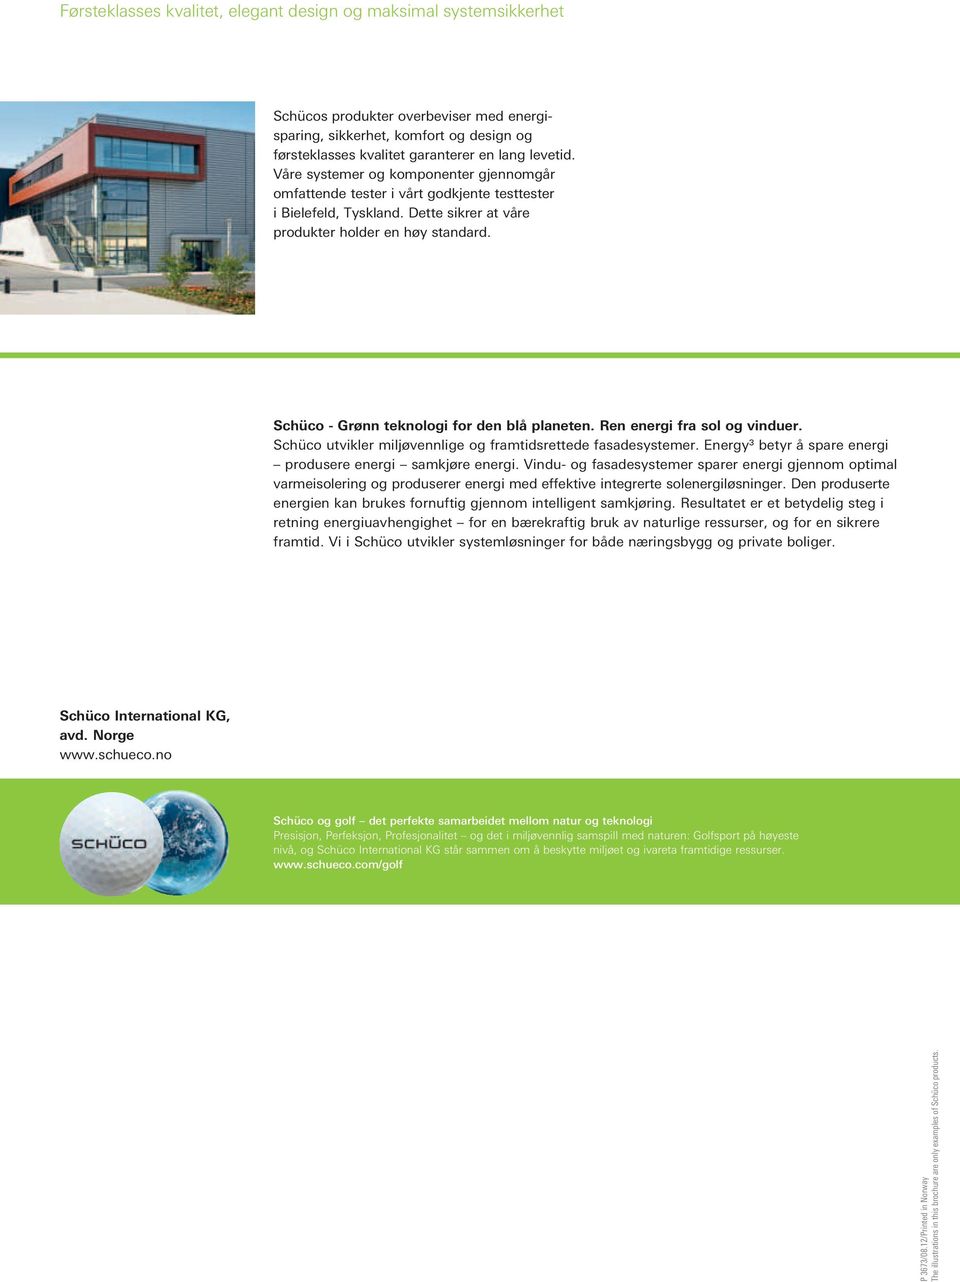 Schüco - Grønn teknologi for den blå planeten. Ren energi fra sol og vinduer. Schüco utvikler miljøvennlige og framtidsrettede fasadesystemer.